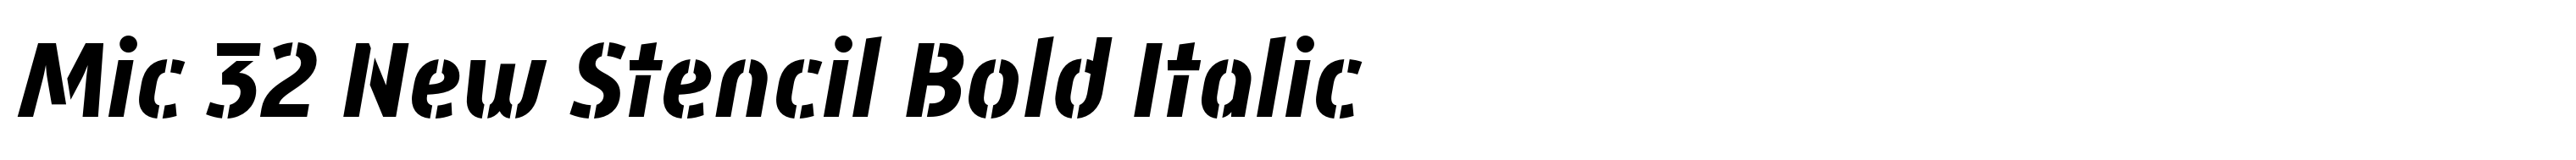 Mic 32 New Stencil Bold Italic